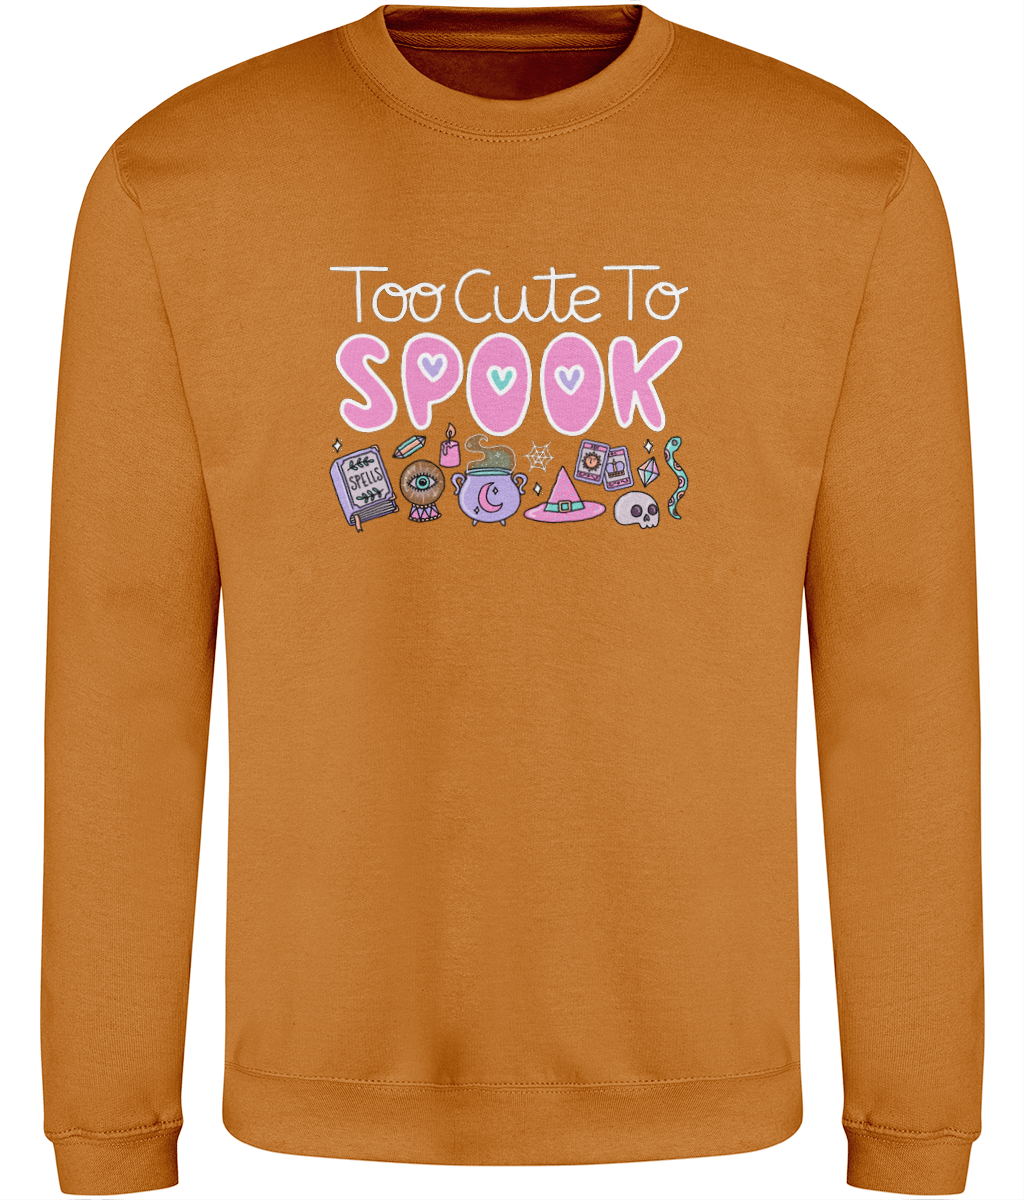 Spellbound Sweatshirt - Too Cute To Spook